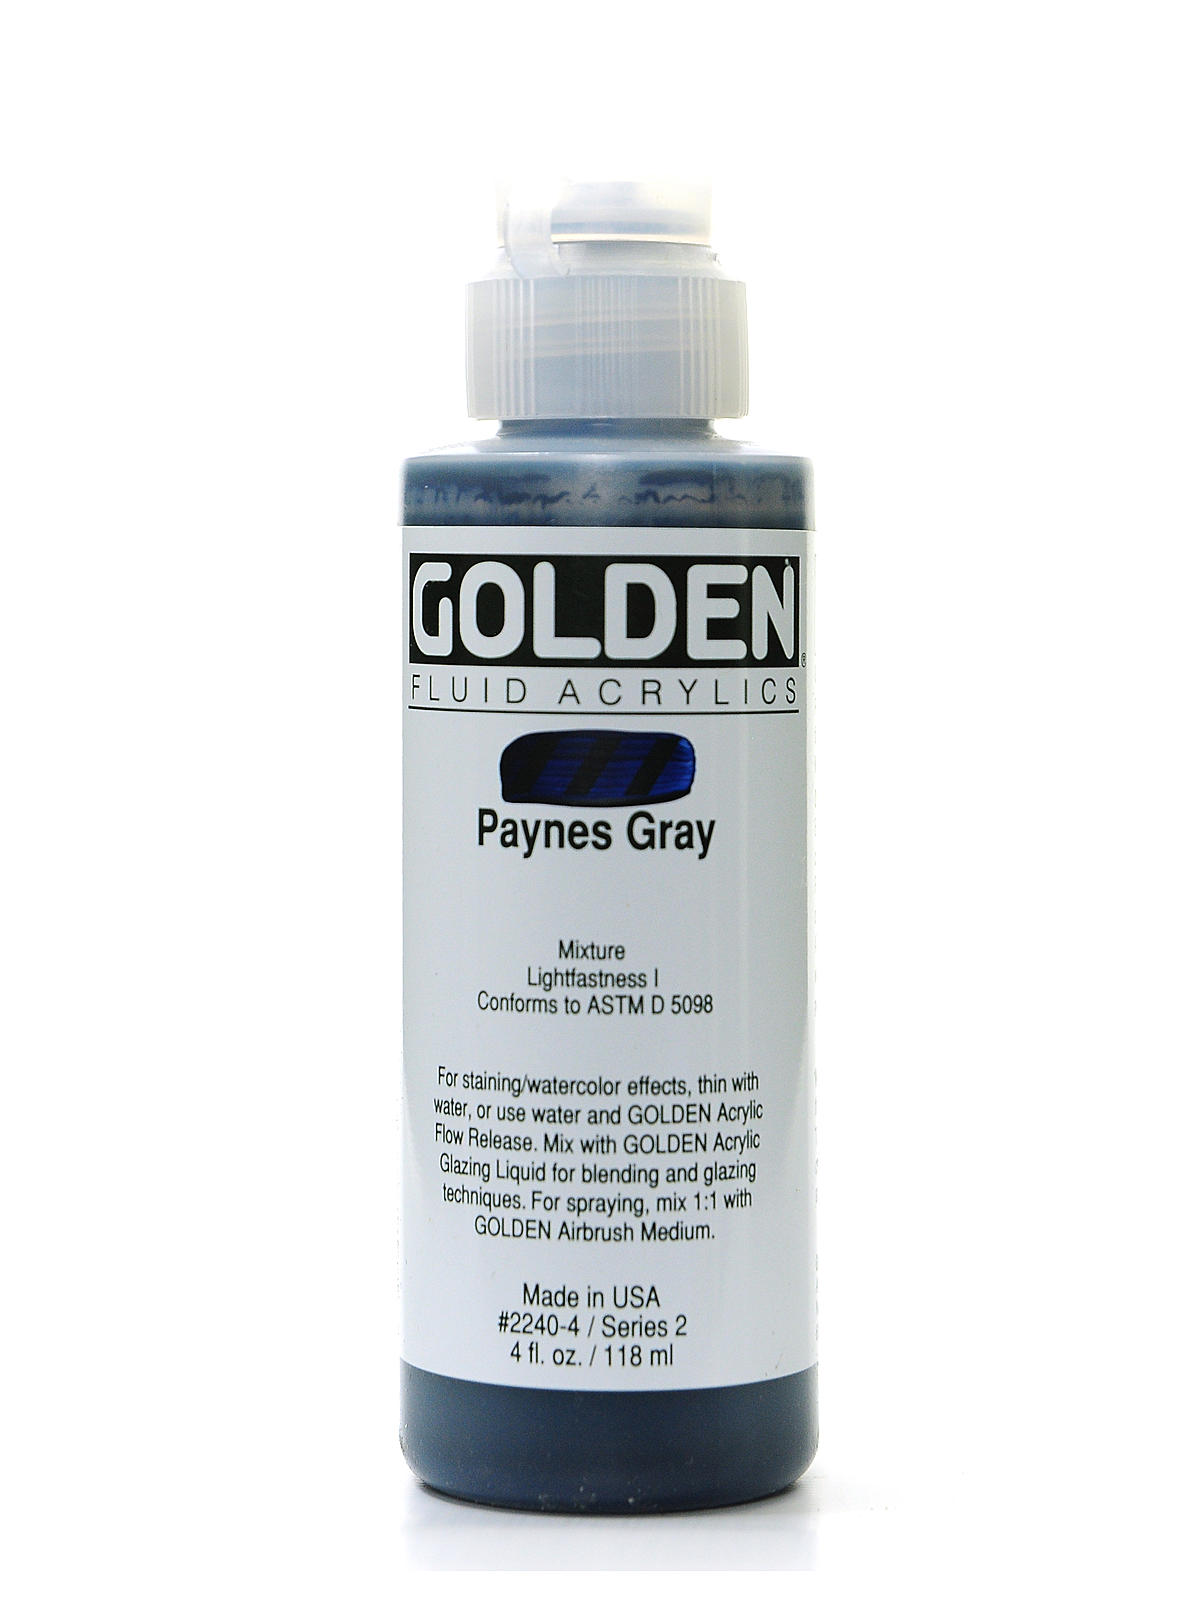 Fluid Acrylics payne's gray 4 oz.